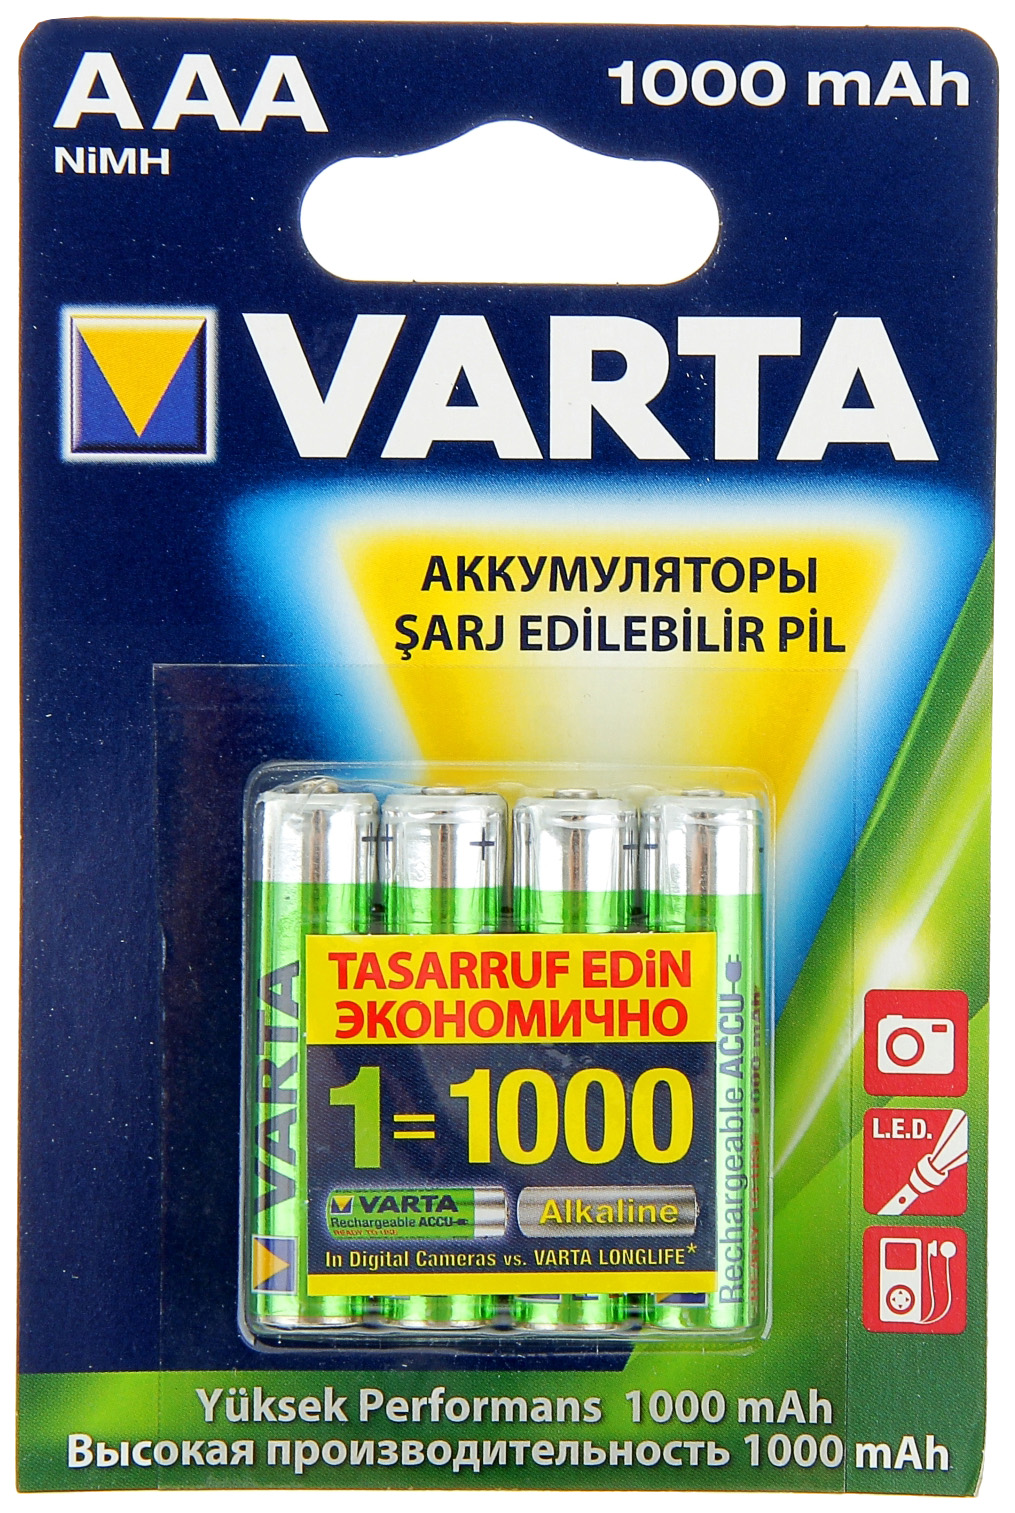 Аккумуляторы VARTA AAA (4 шт.), BAT20001209M аккумуляторы типа aa varta hr06 комплект 4 штуки 2700mah